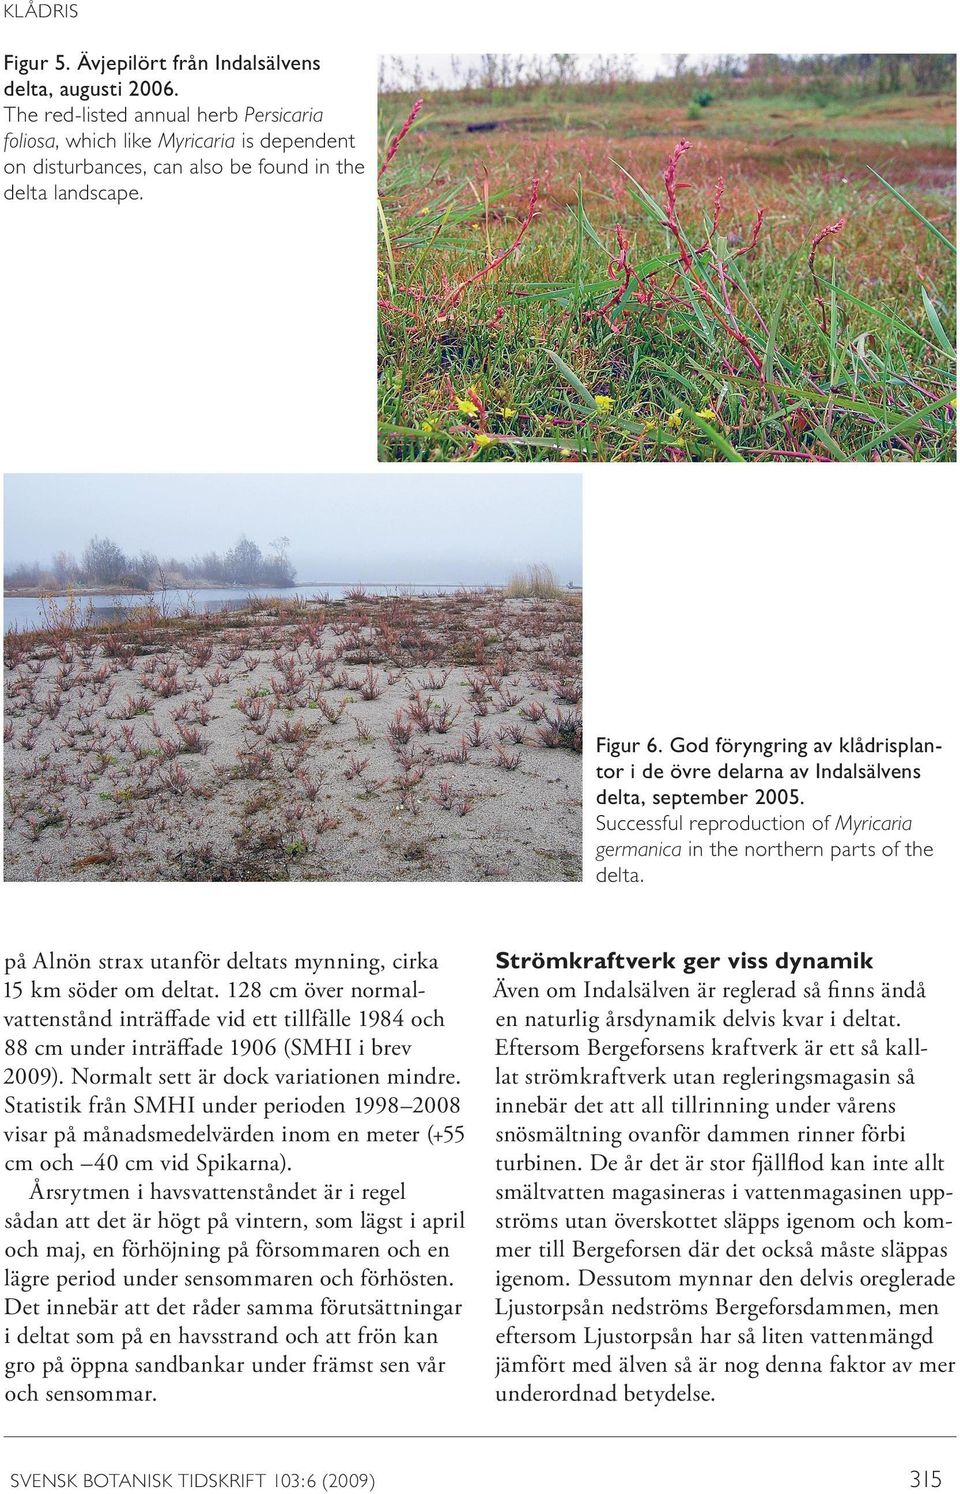 God föryngring av klådrisplantor i de övre delarna av Indalsälvens delta, september 2005. Successful reproduction of Myricaria germanica in the northern parts of the delta.